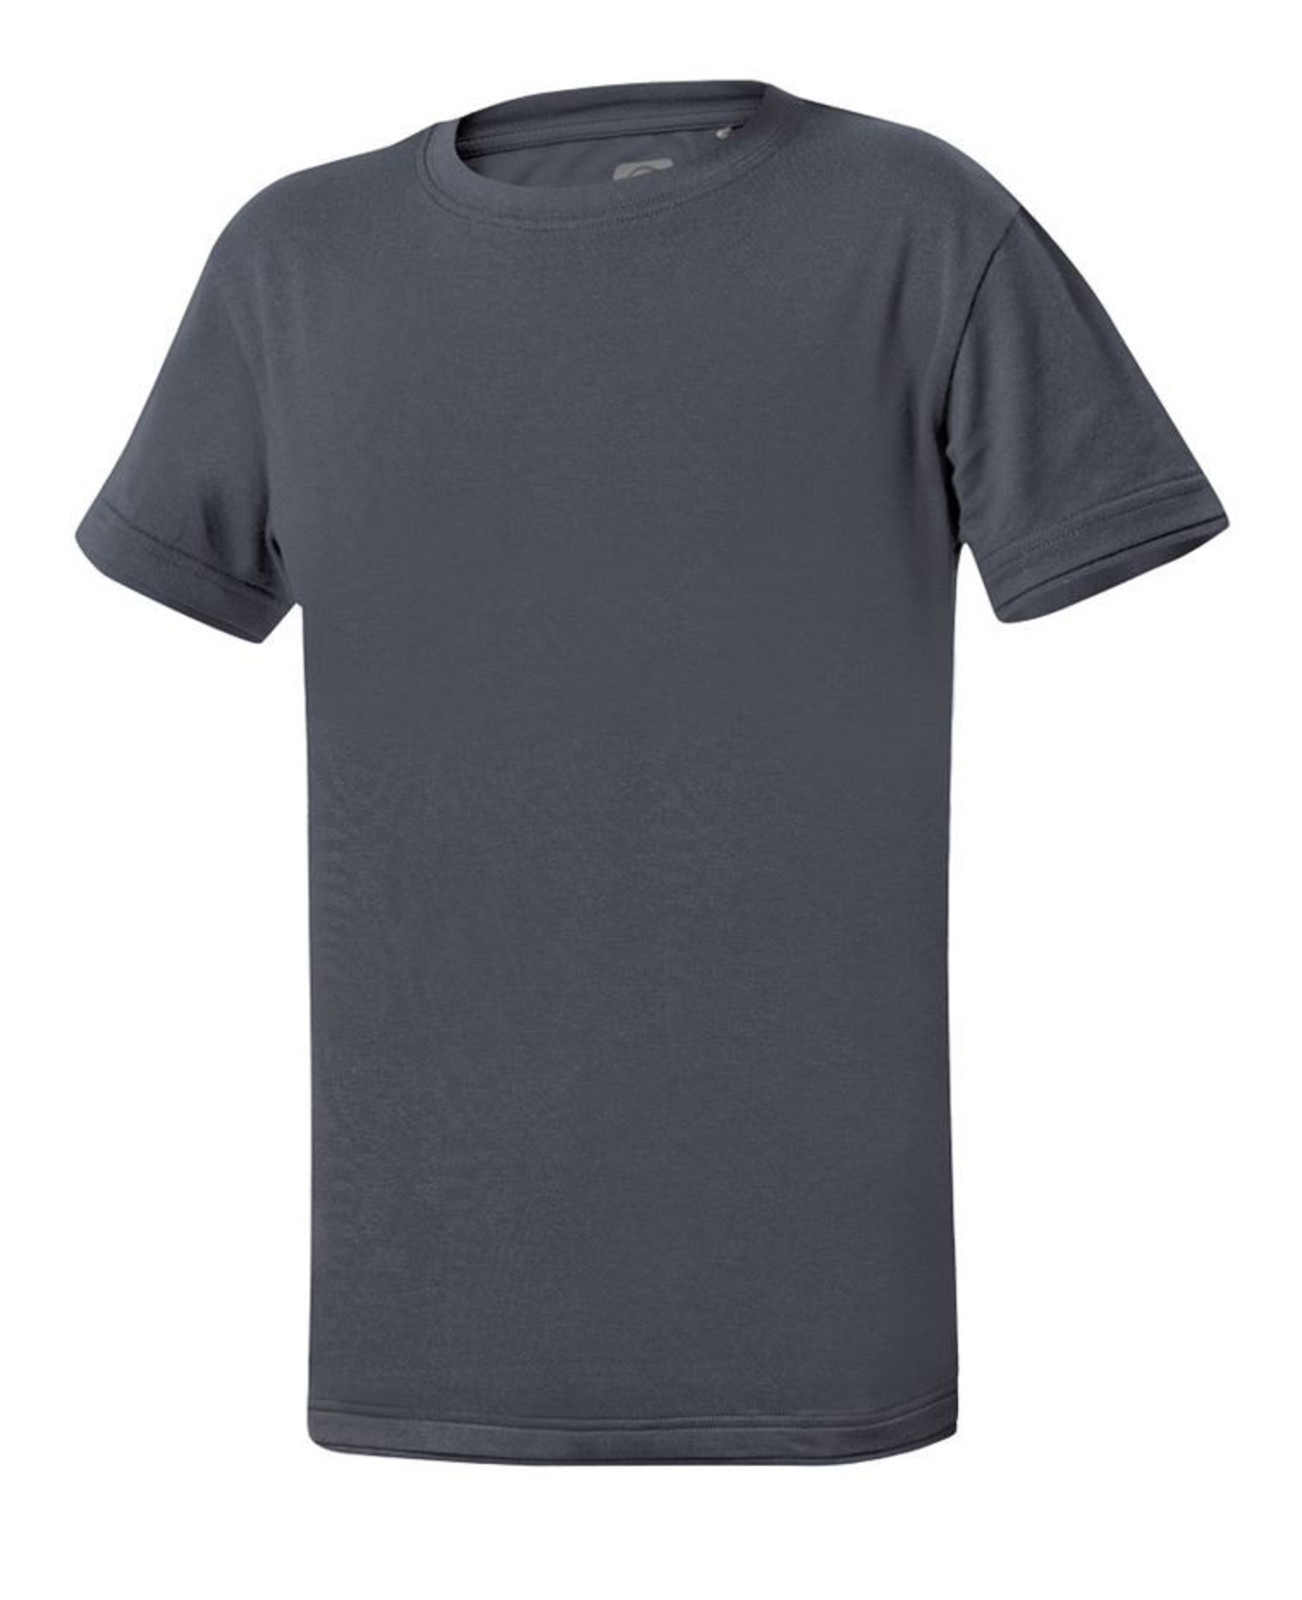 Detské tričko Ardon Trendy - veľkosť: 110/116, farba: tmavošedá